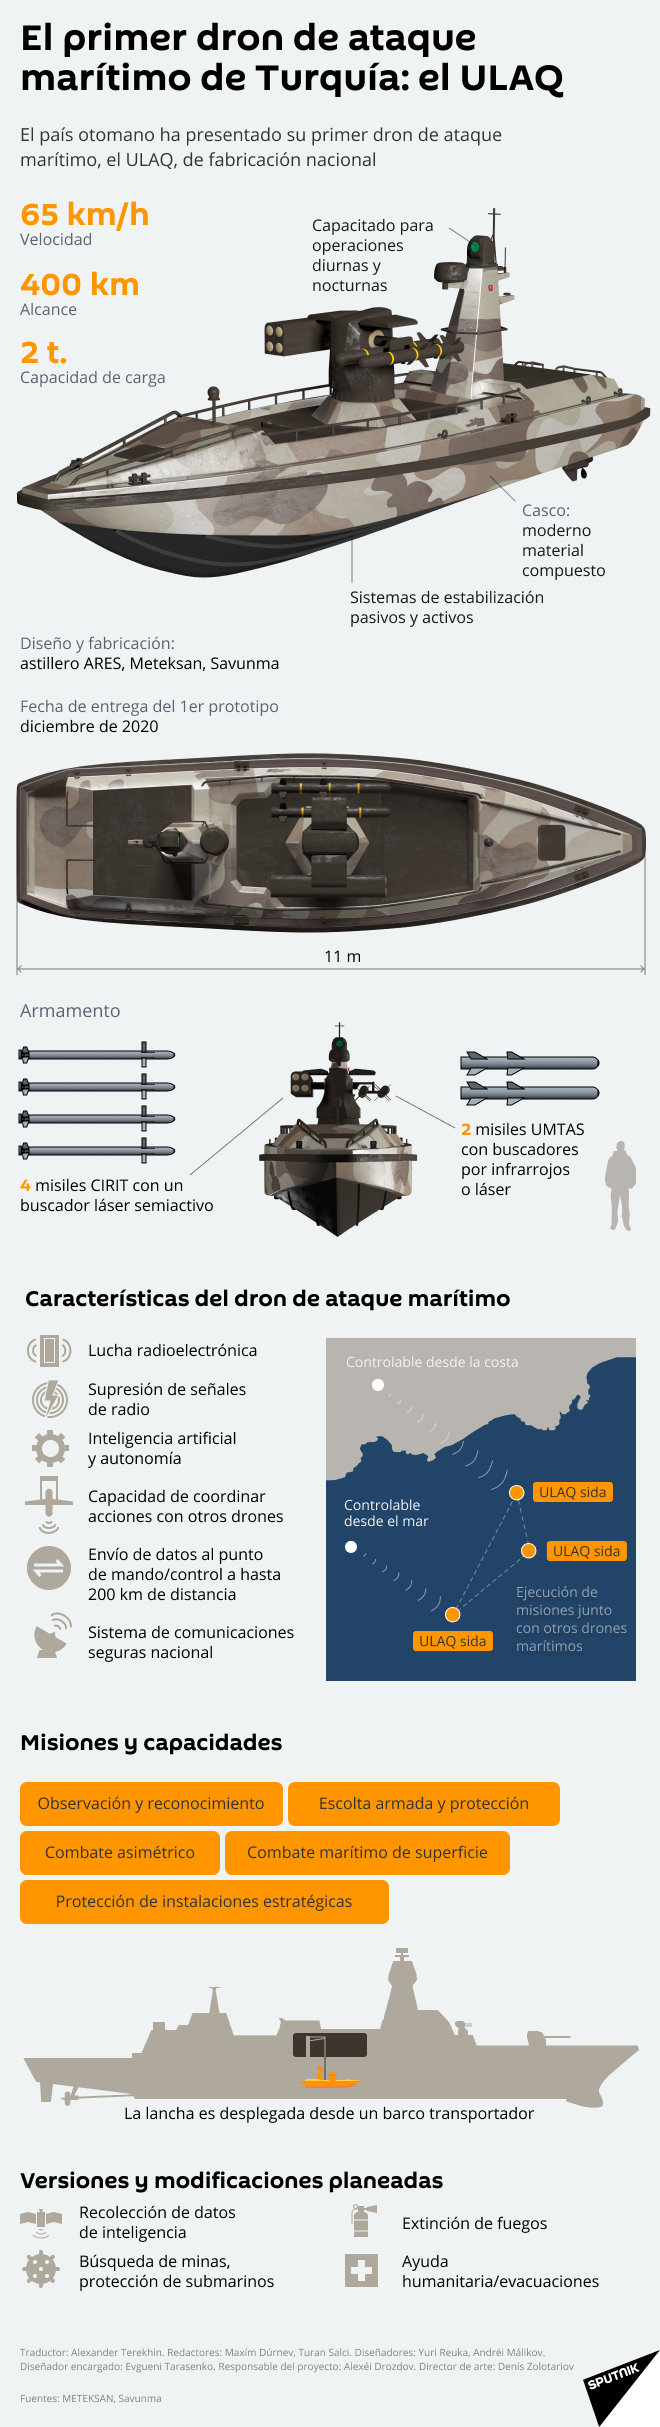 ULAQ: el dron de ataque marítimo turco, al descubierto - Sputnik Mundo